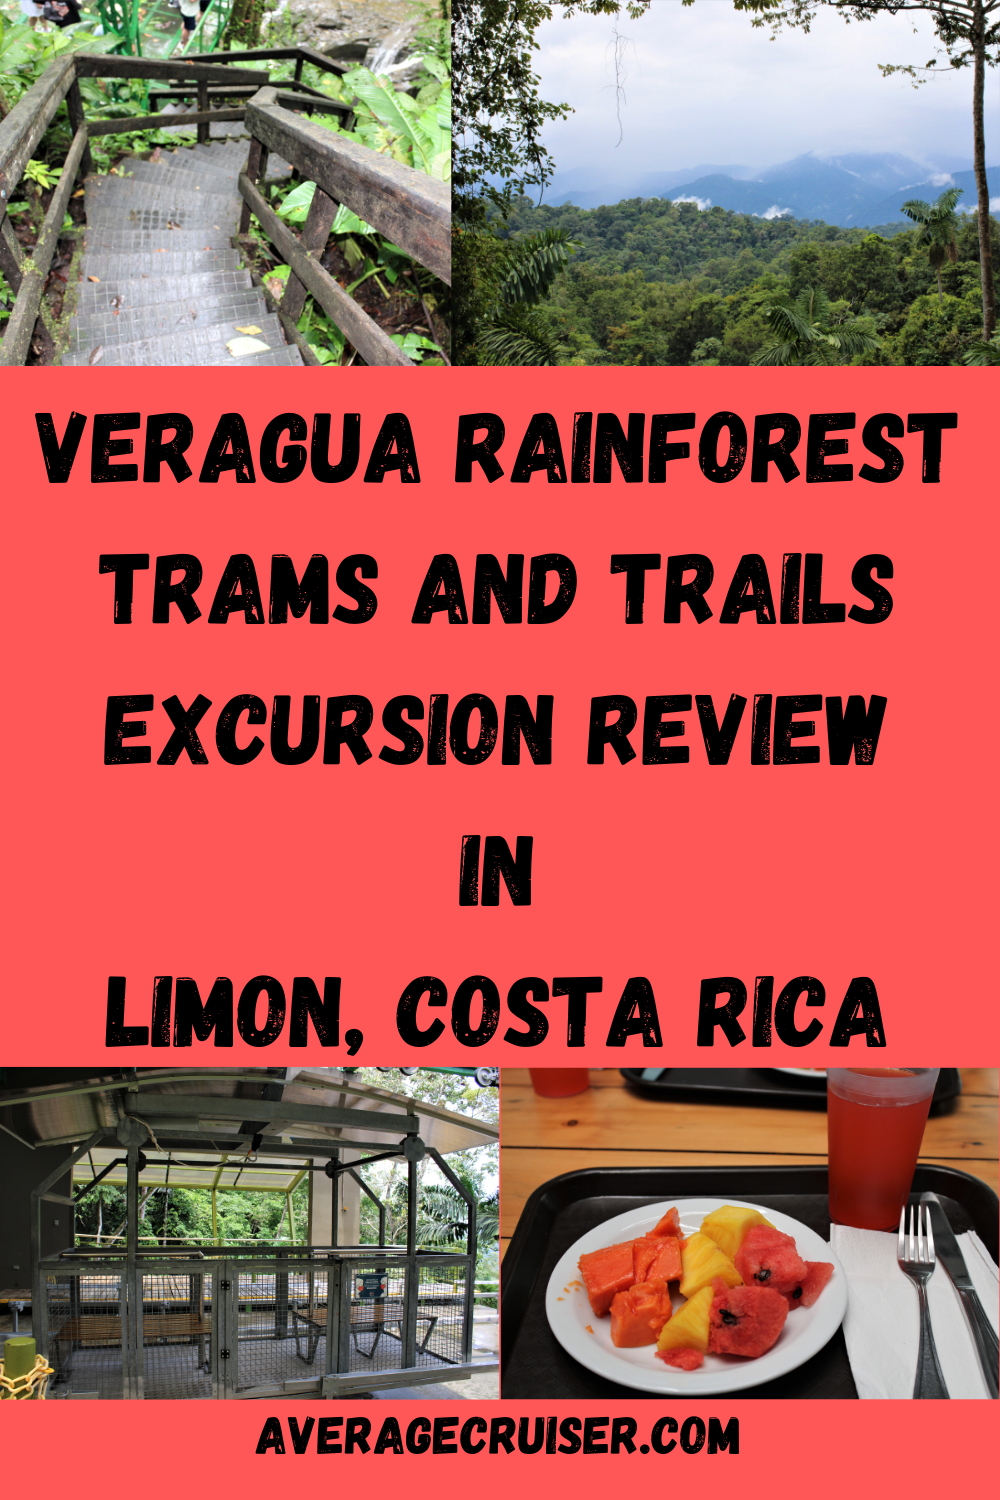 Veragua Rainforest Excursion Review